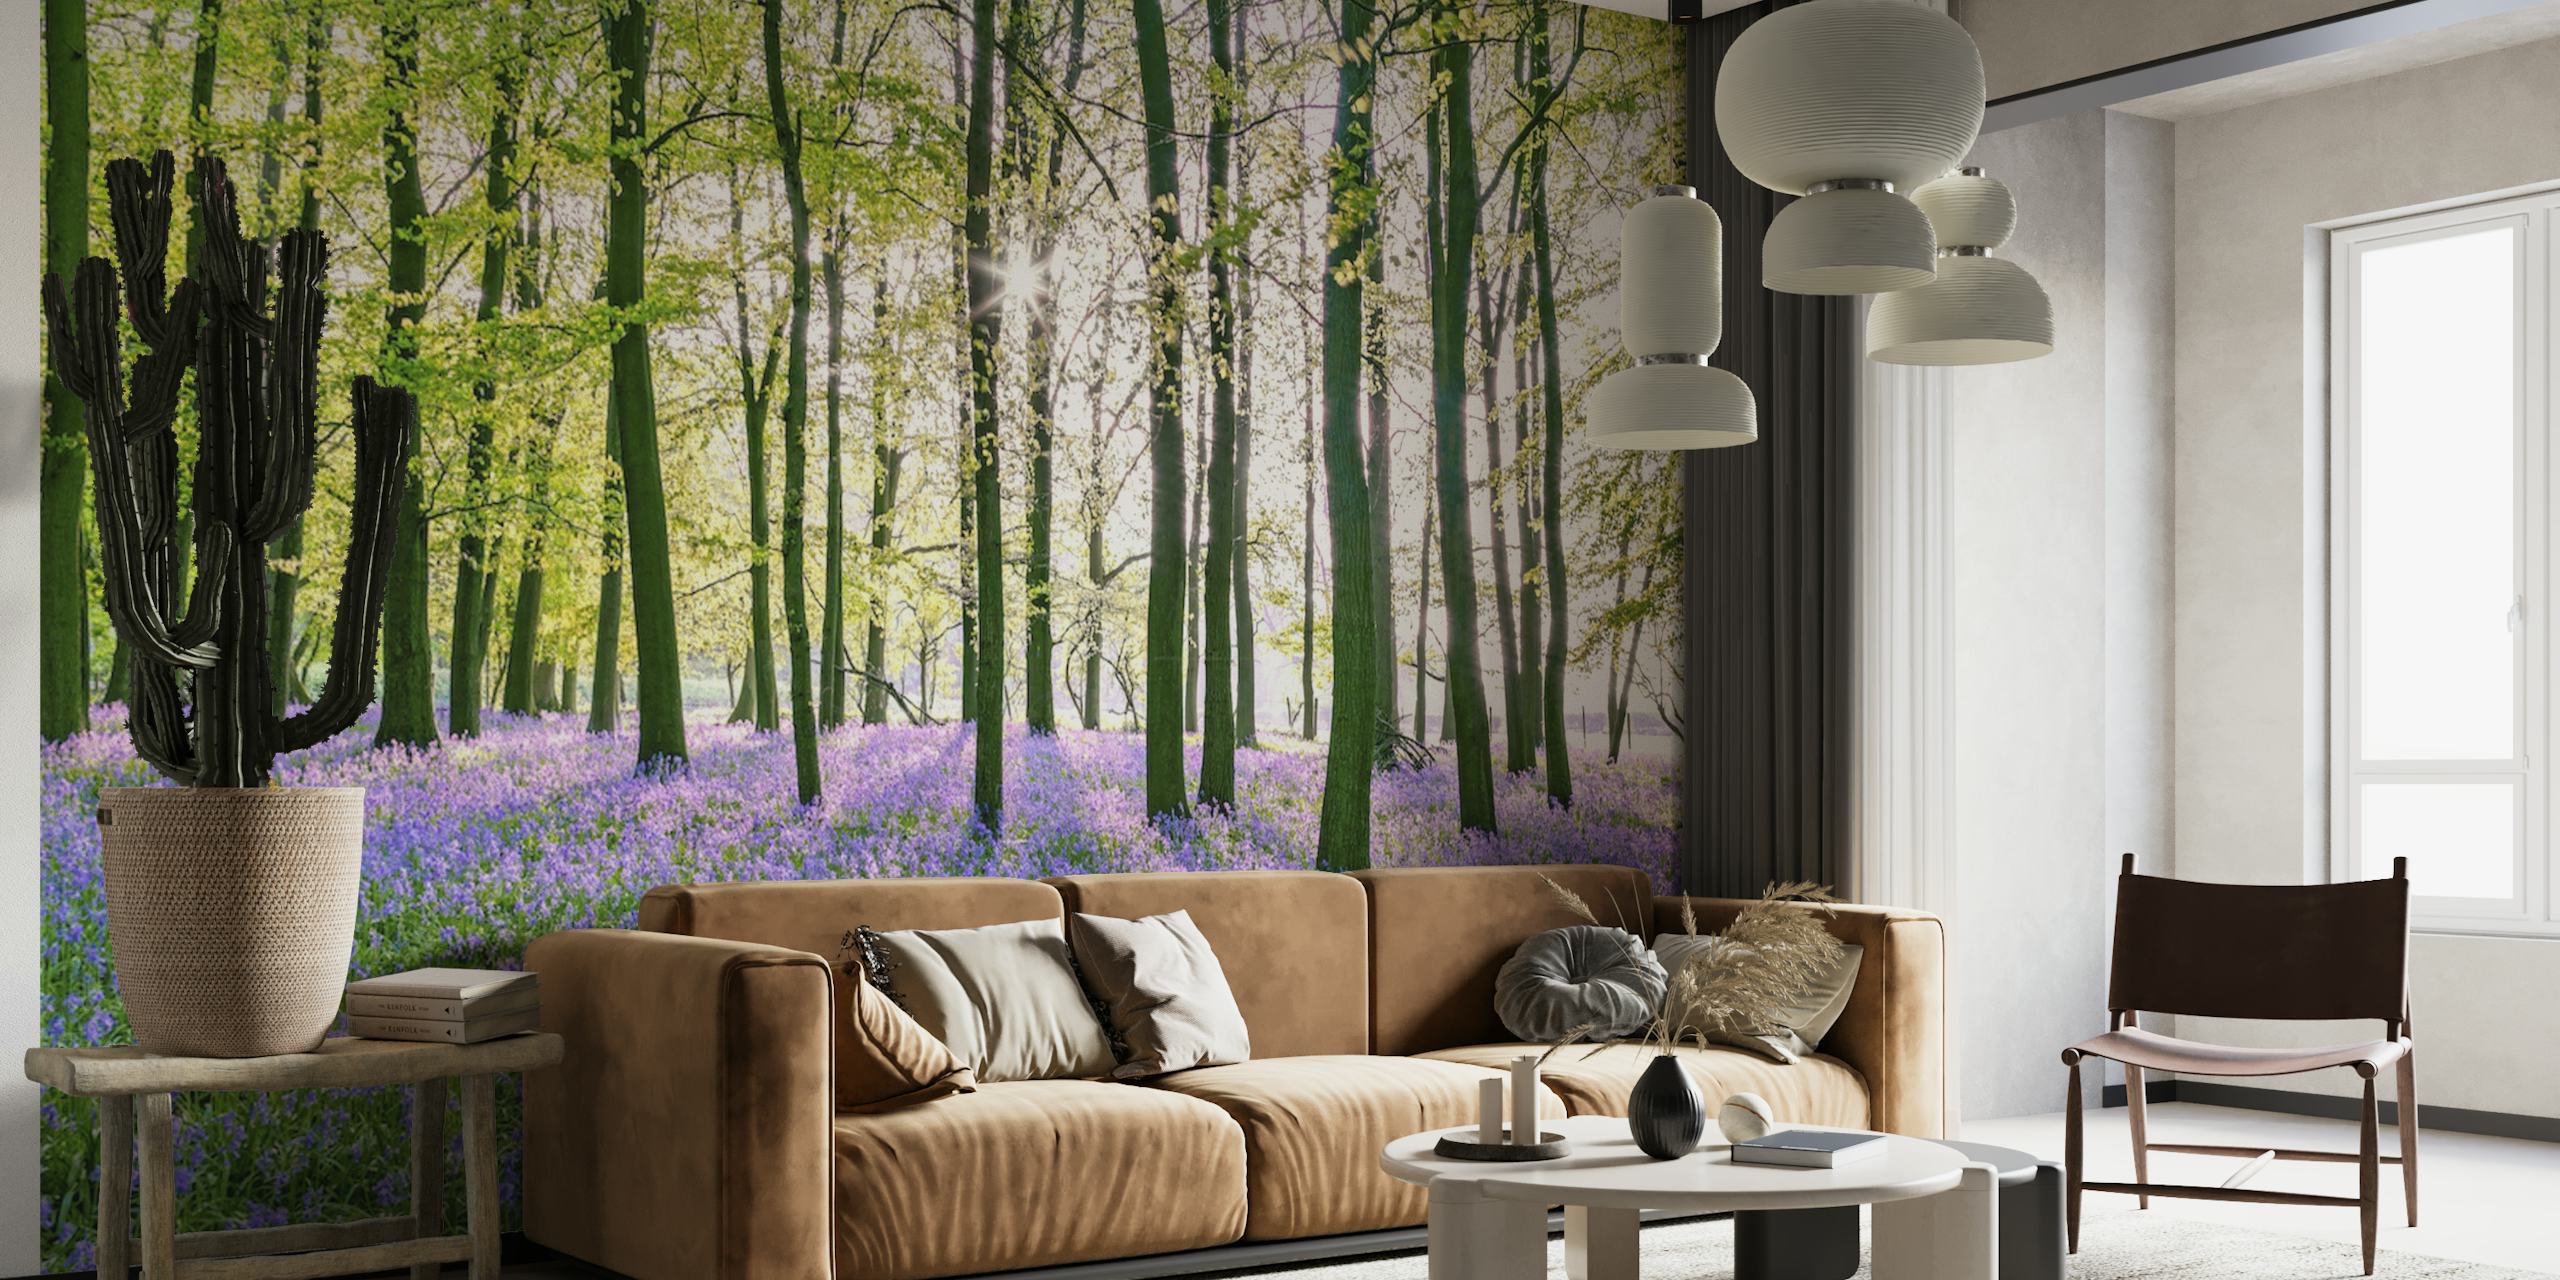 Rauhallinen sinikellometsän seinämaalaus, jossa on vehreä katos ja eloisat violetit kukat peittämässä metsän kerrosta.